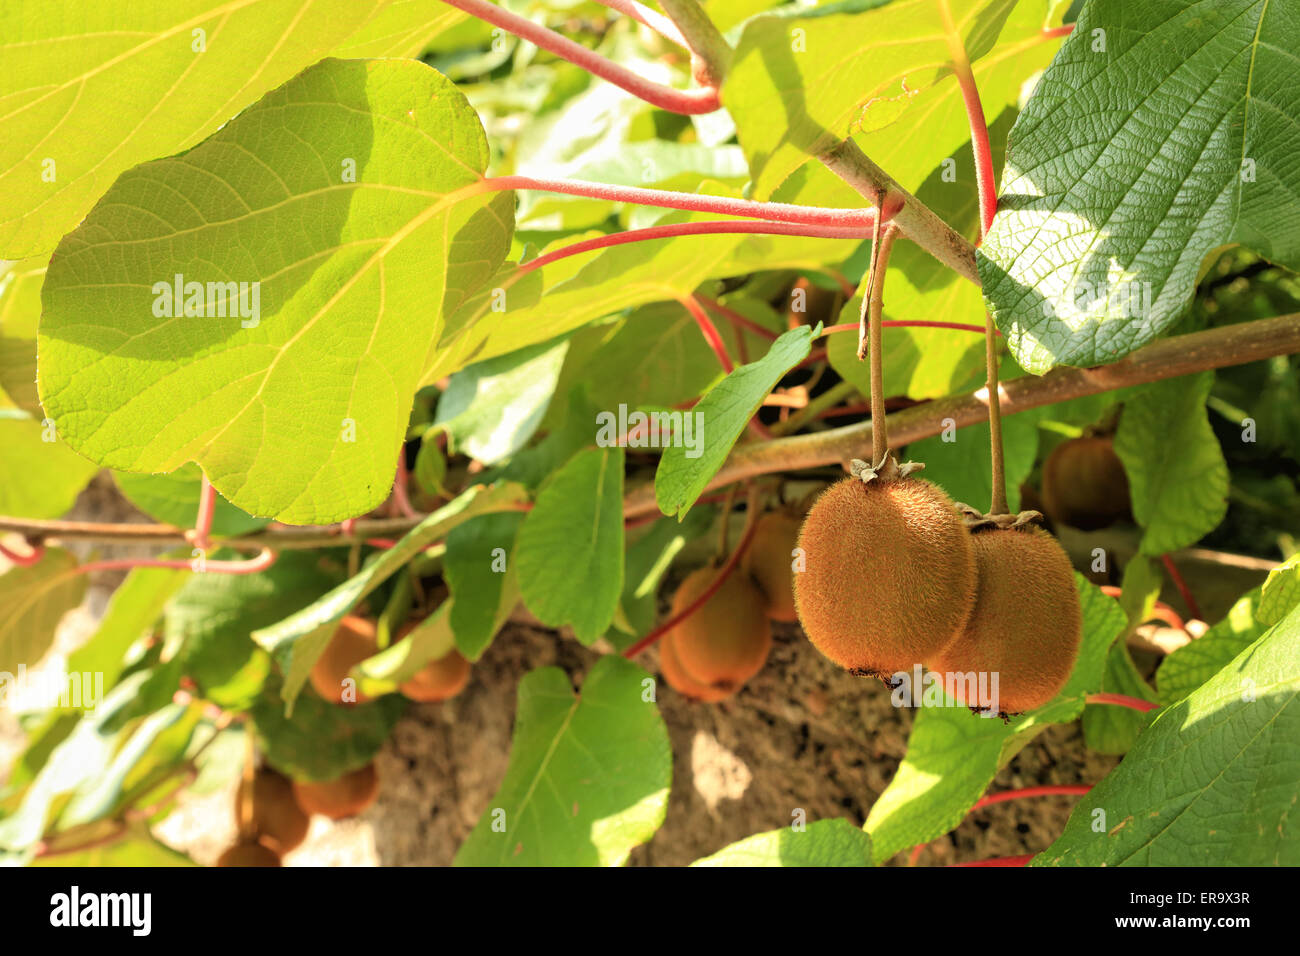 Le kiwi Actinidia deliciosa, plante des arbres Banque D'Images